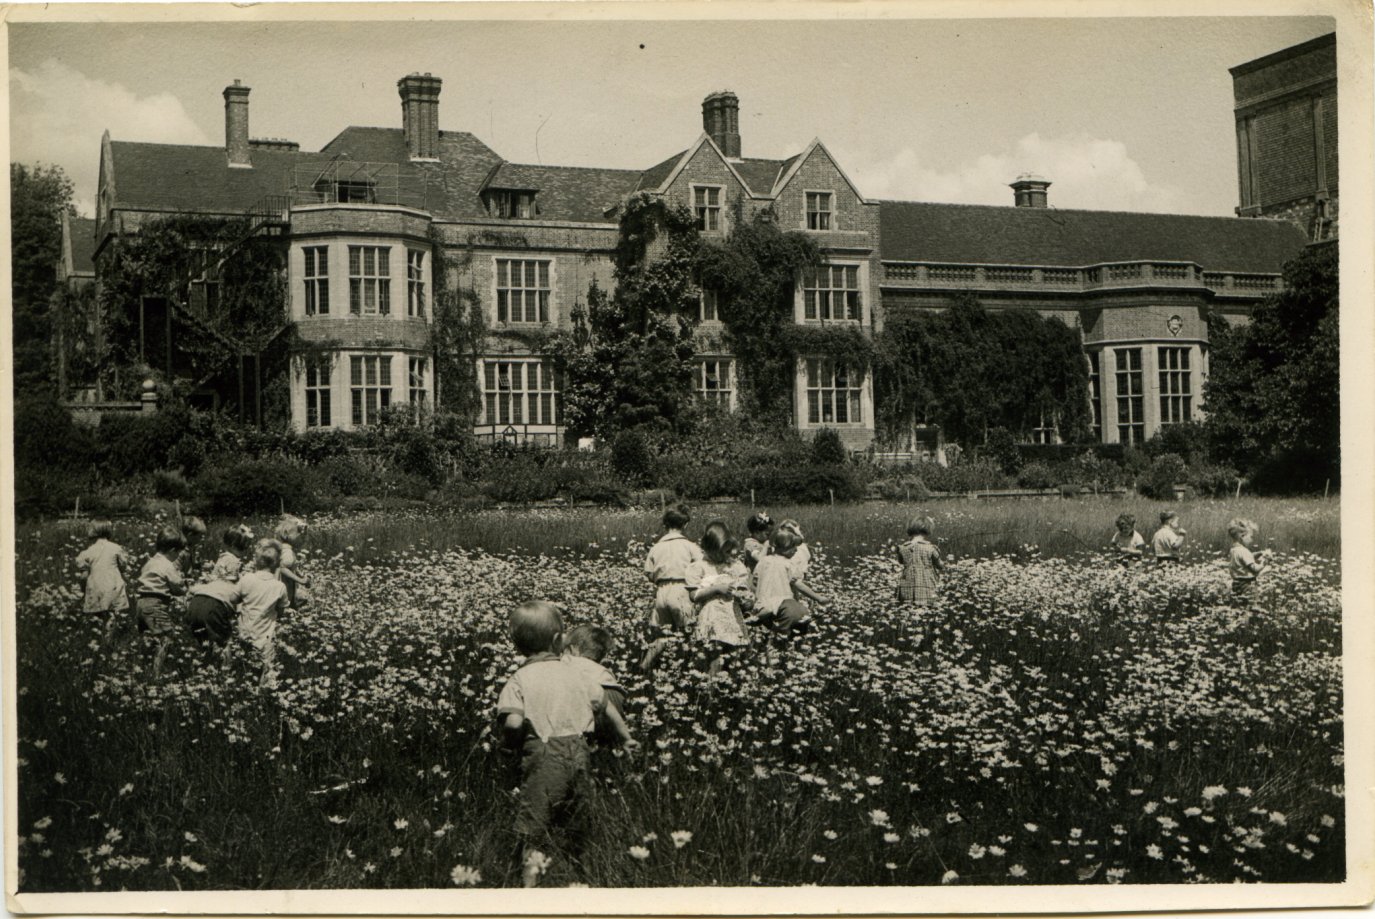 Wartime evacuee children at Glyndebourne